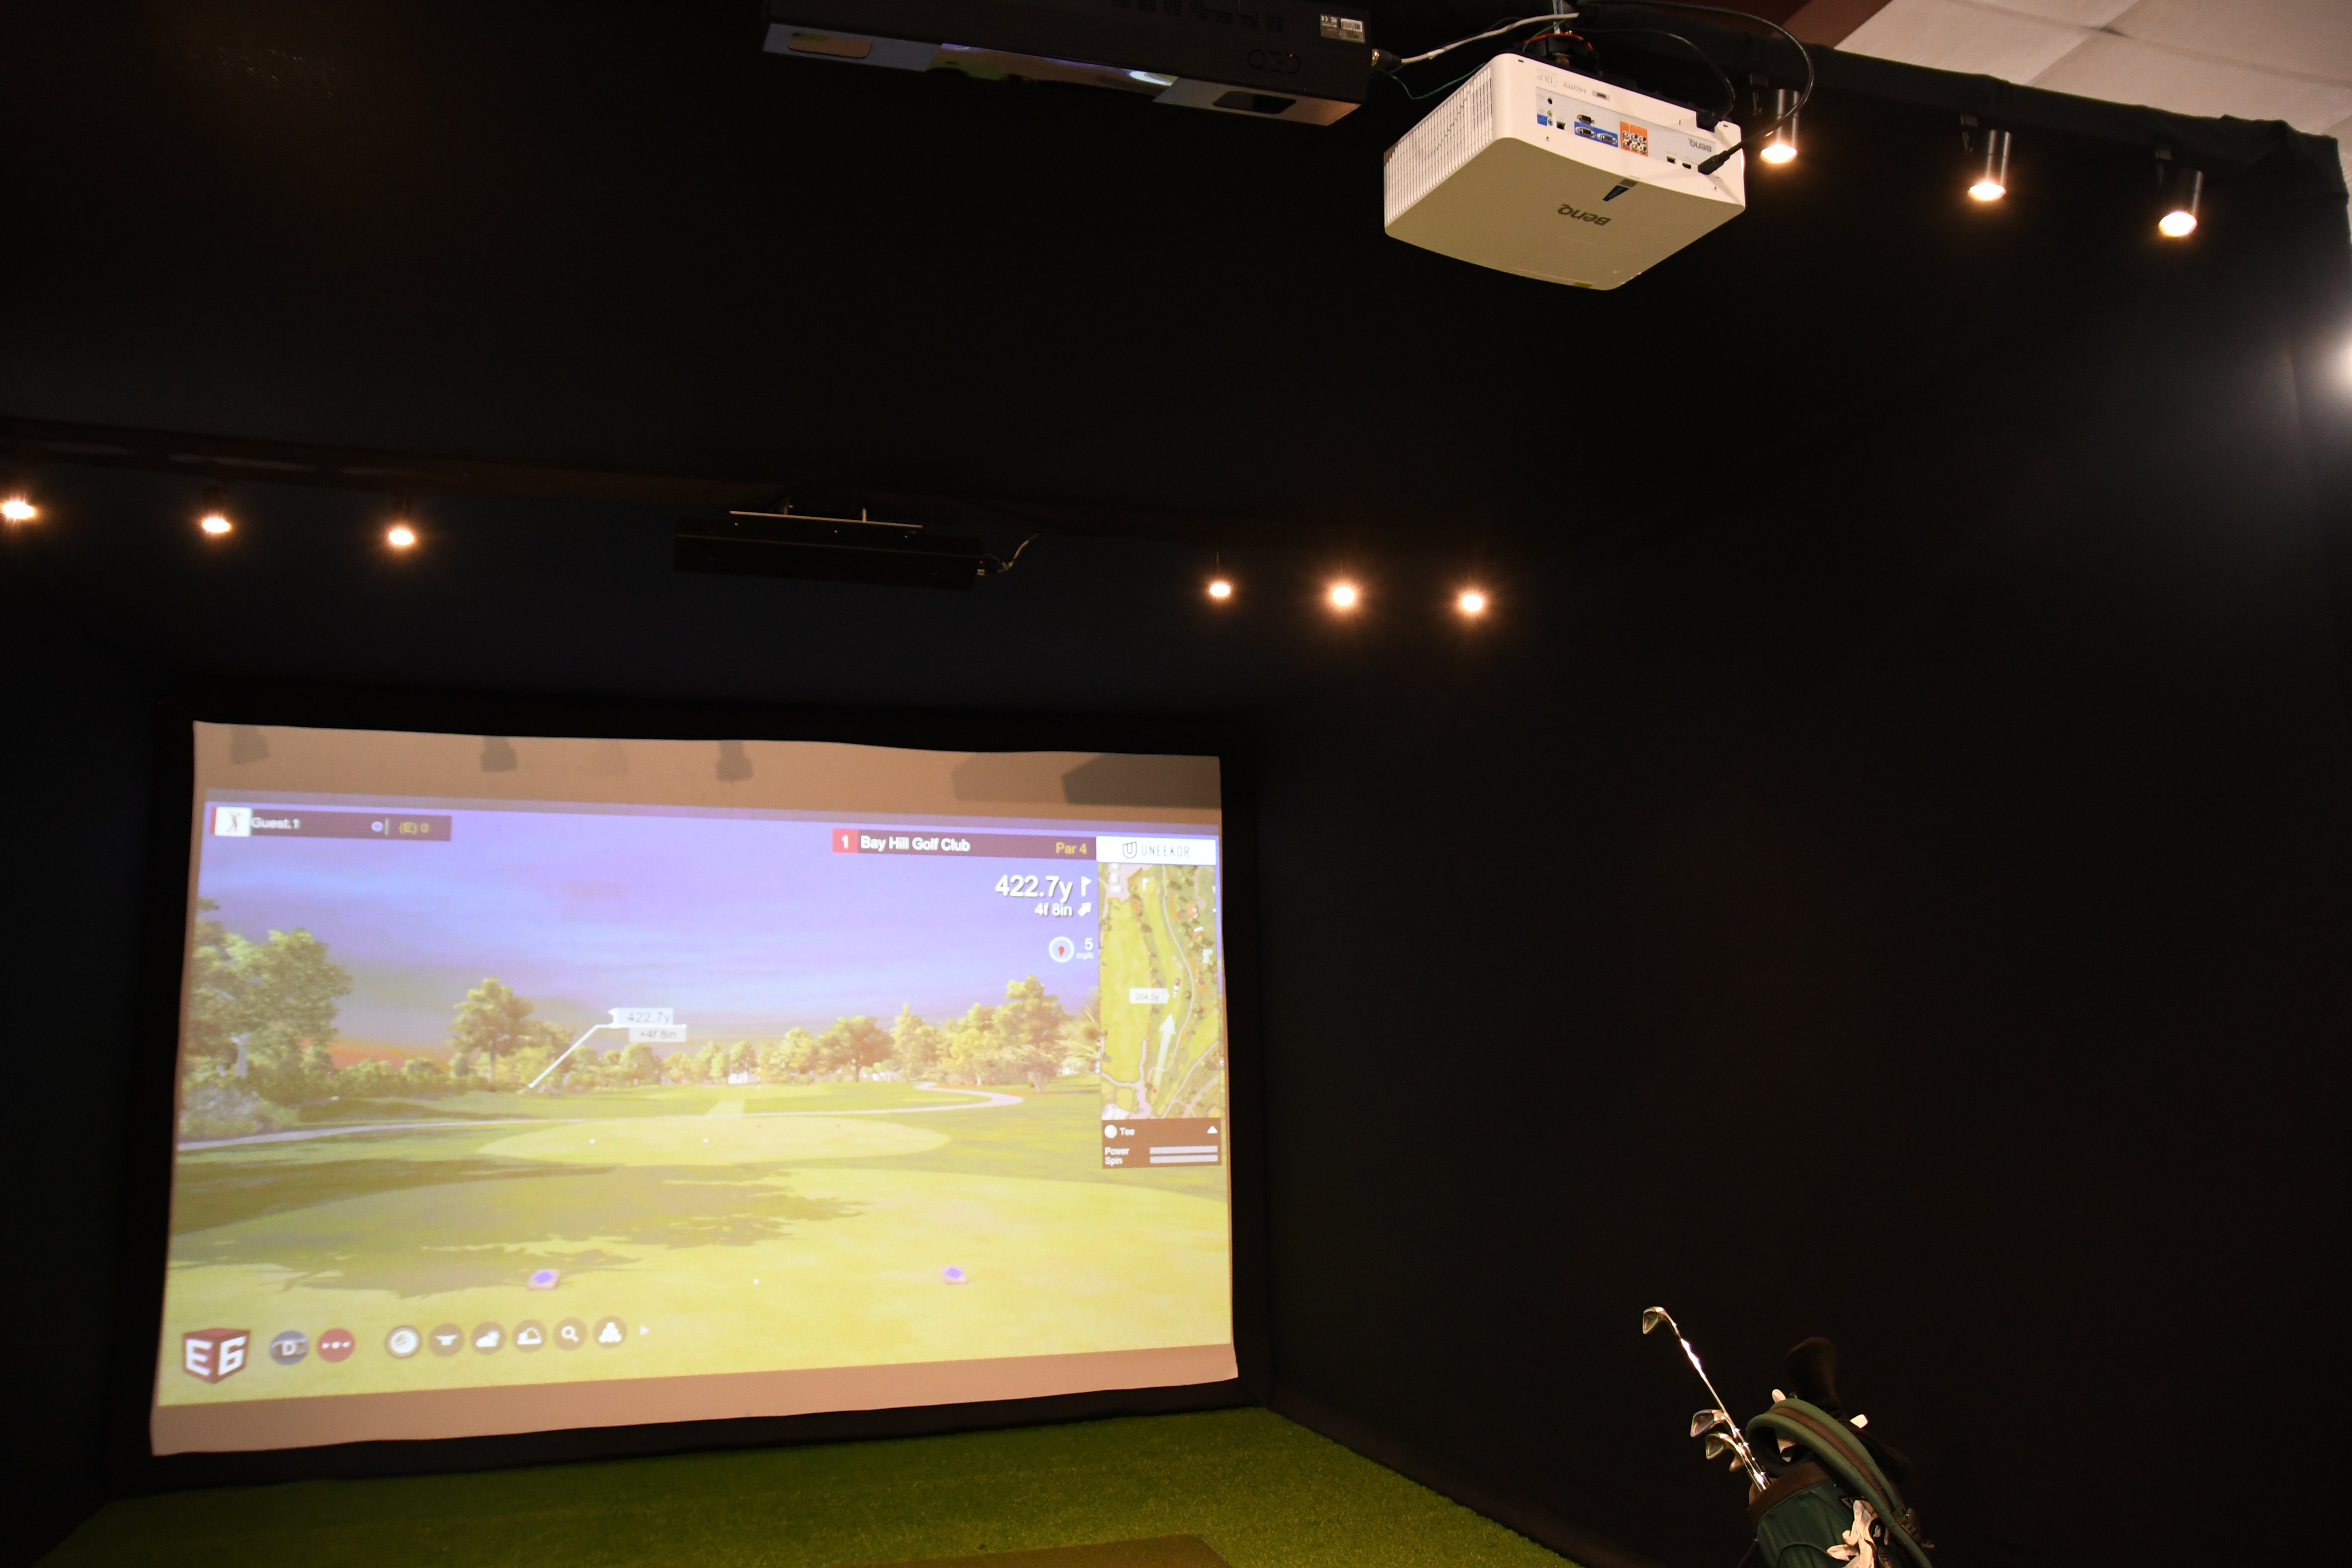 Top Golf Simulator Projectors for 2021